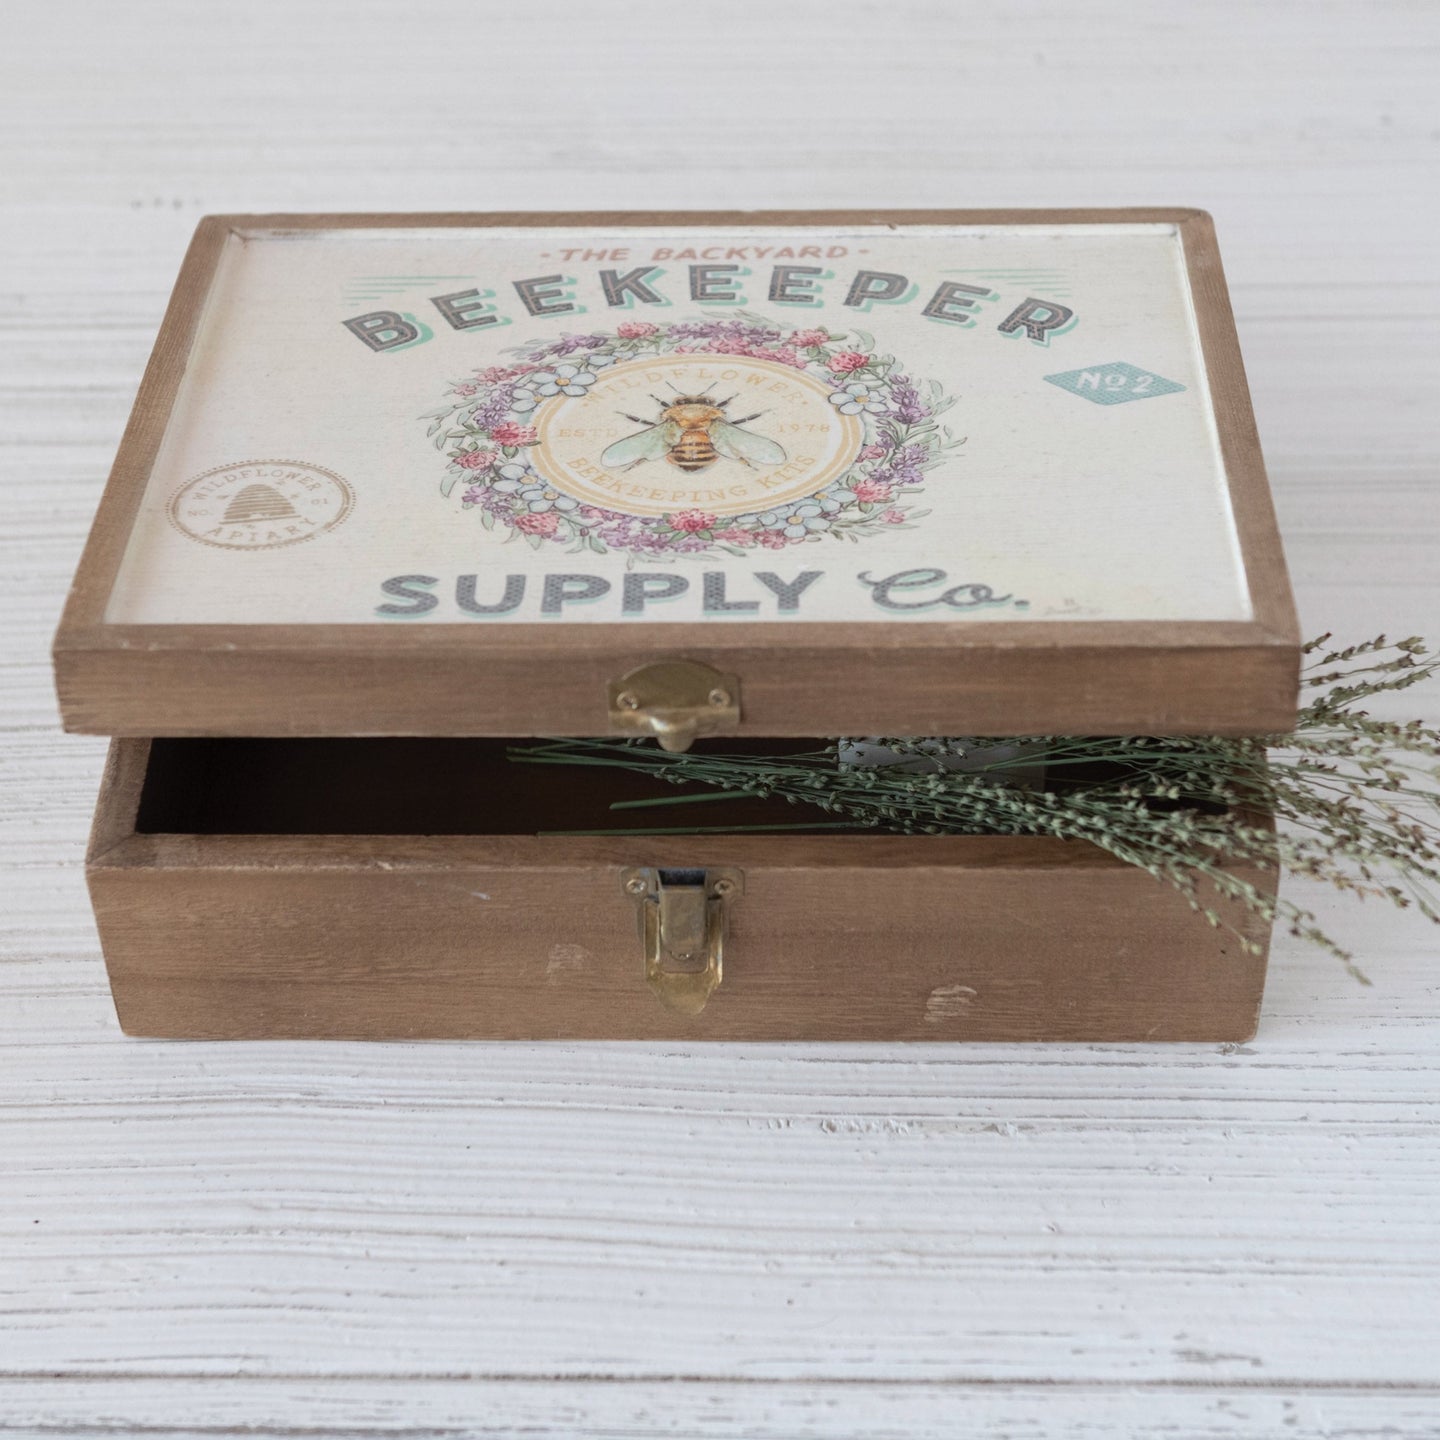 Beekeeper Supply Co Box